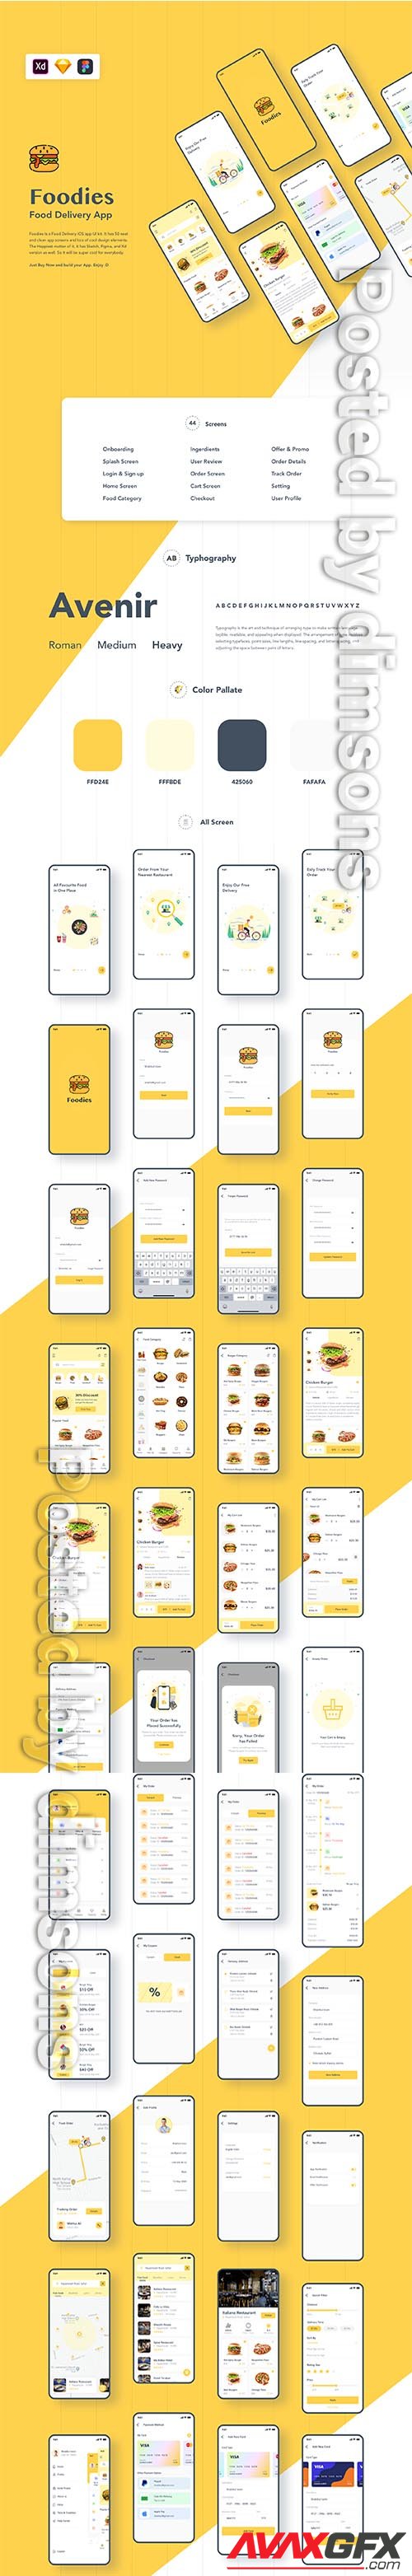 Foodies: Food ordering & delivery IOS app UI kit